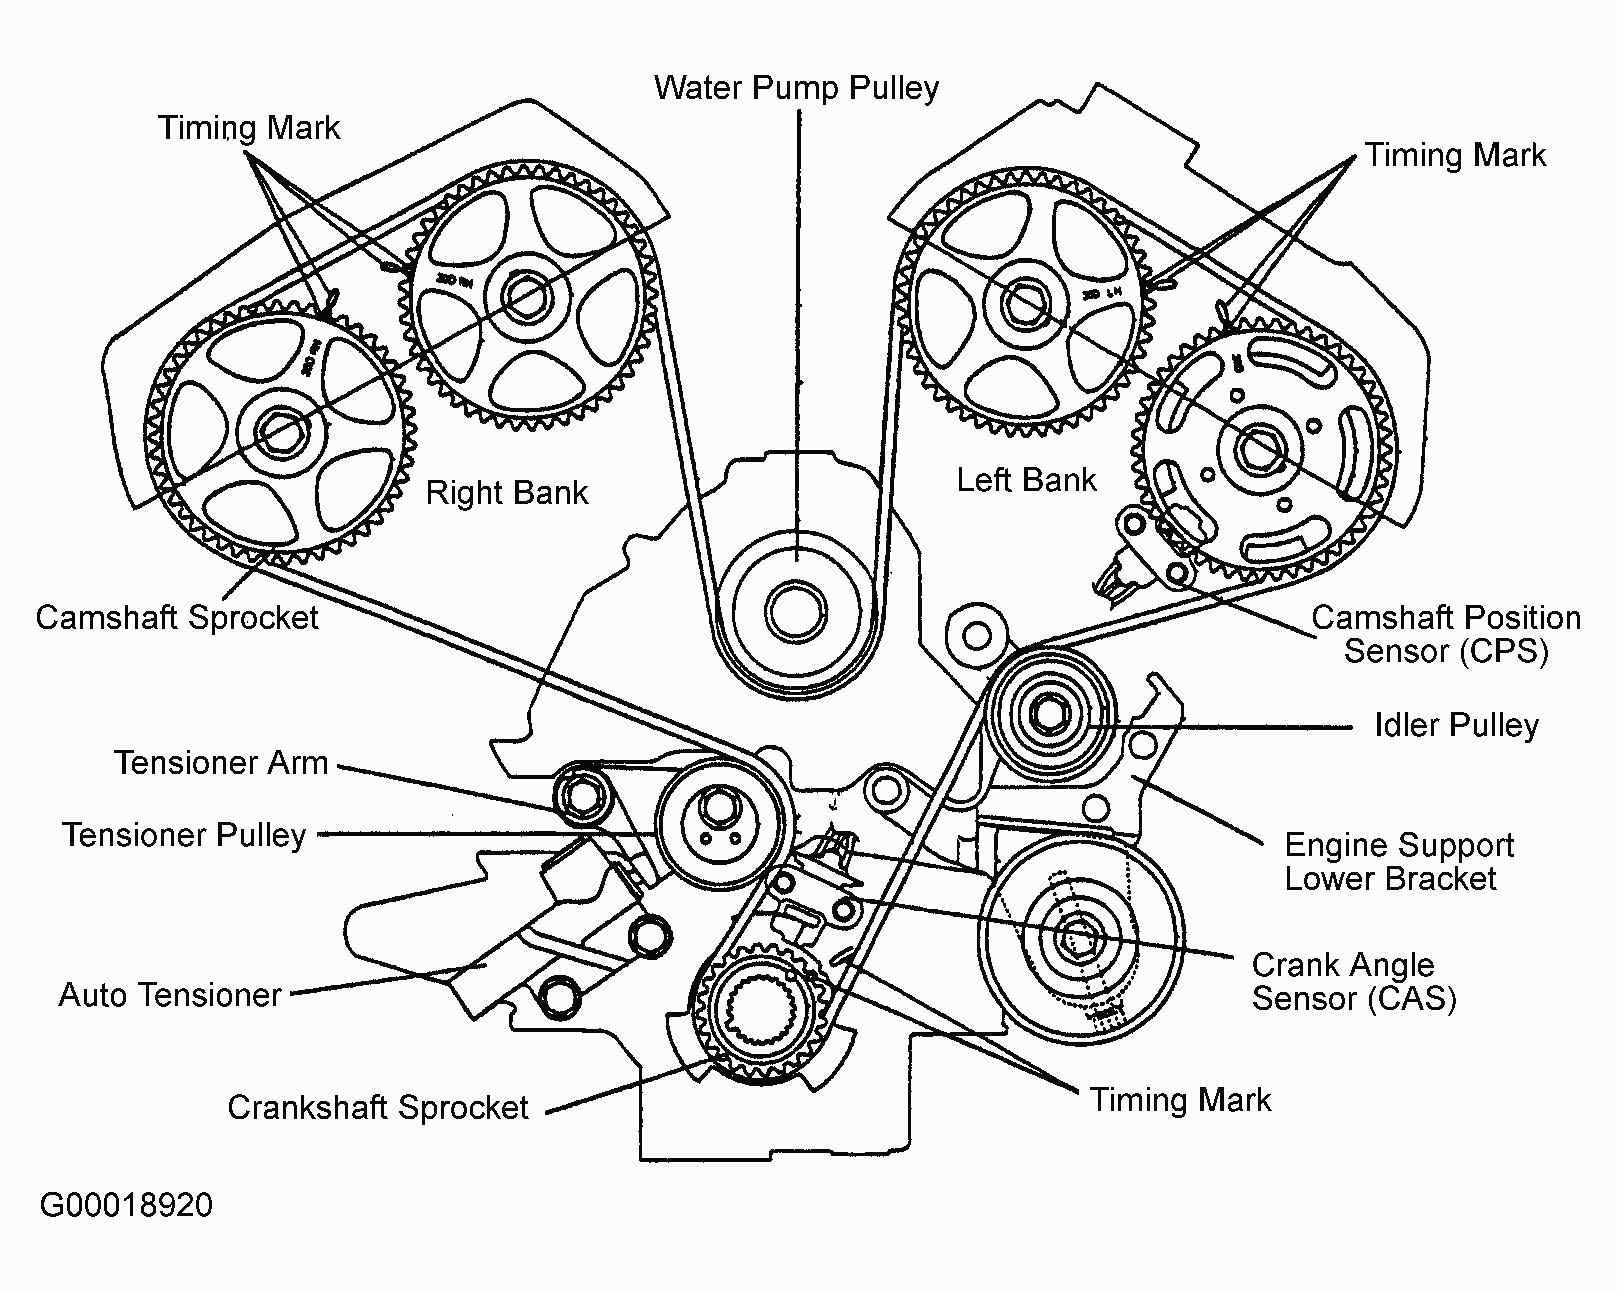 Kia Sedona Engine Diagram Hyundai sonata Timing Belt Fresh Timing Belt Kit Fits Hyundai Tucson Of Kia Sedona Engine Diagram